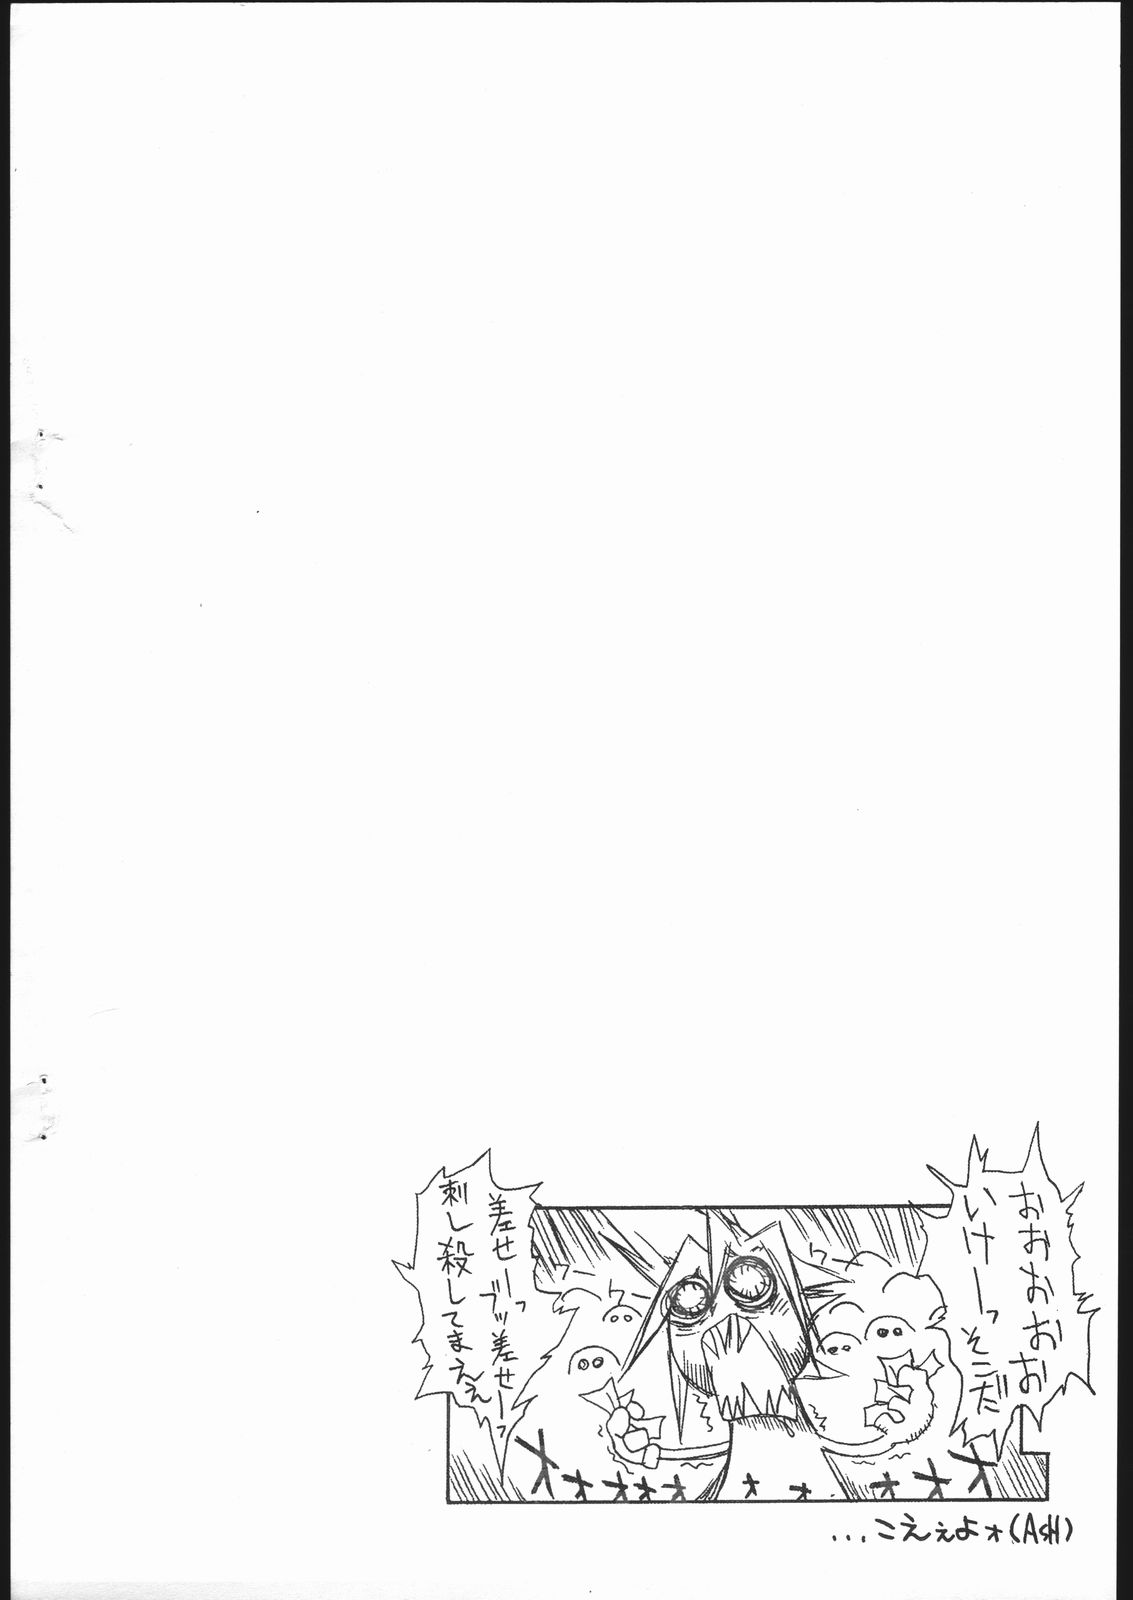 (C59) [ブラジオーレ、サンタマルタ (Ash横島、山本雲居)] 今回の敵は2人。 (ファイナルファンタジー VII)